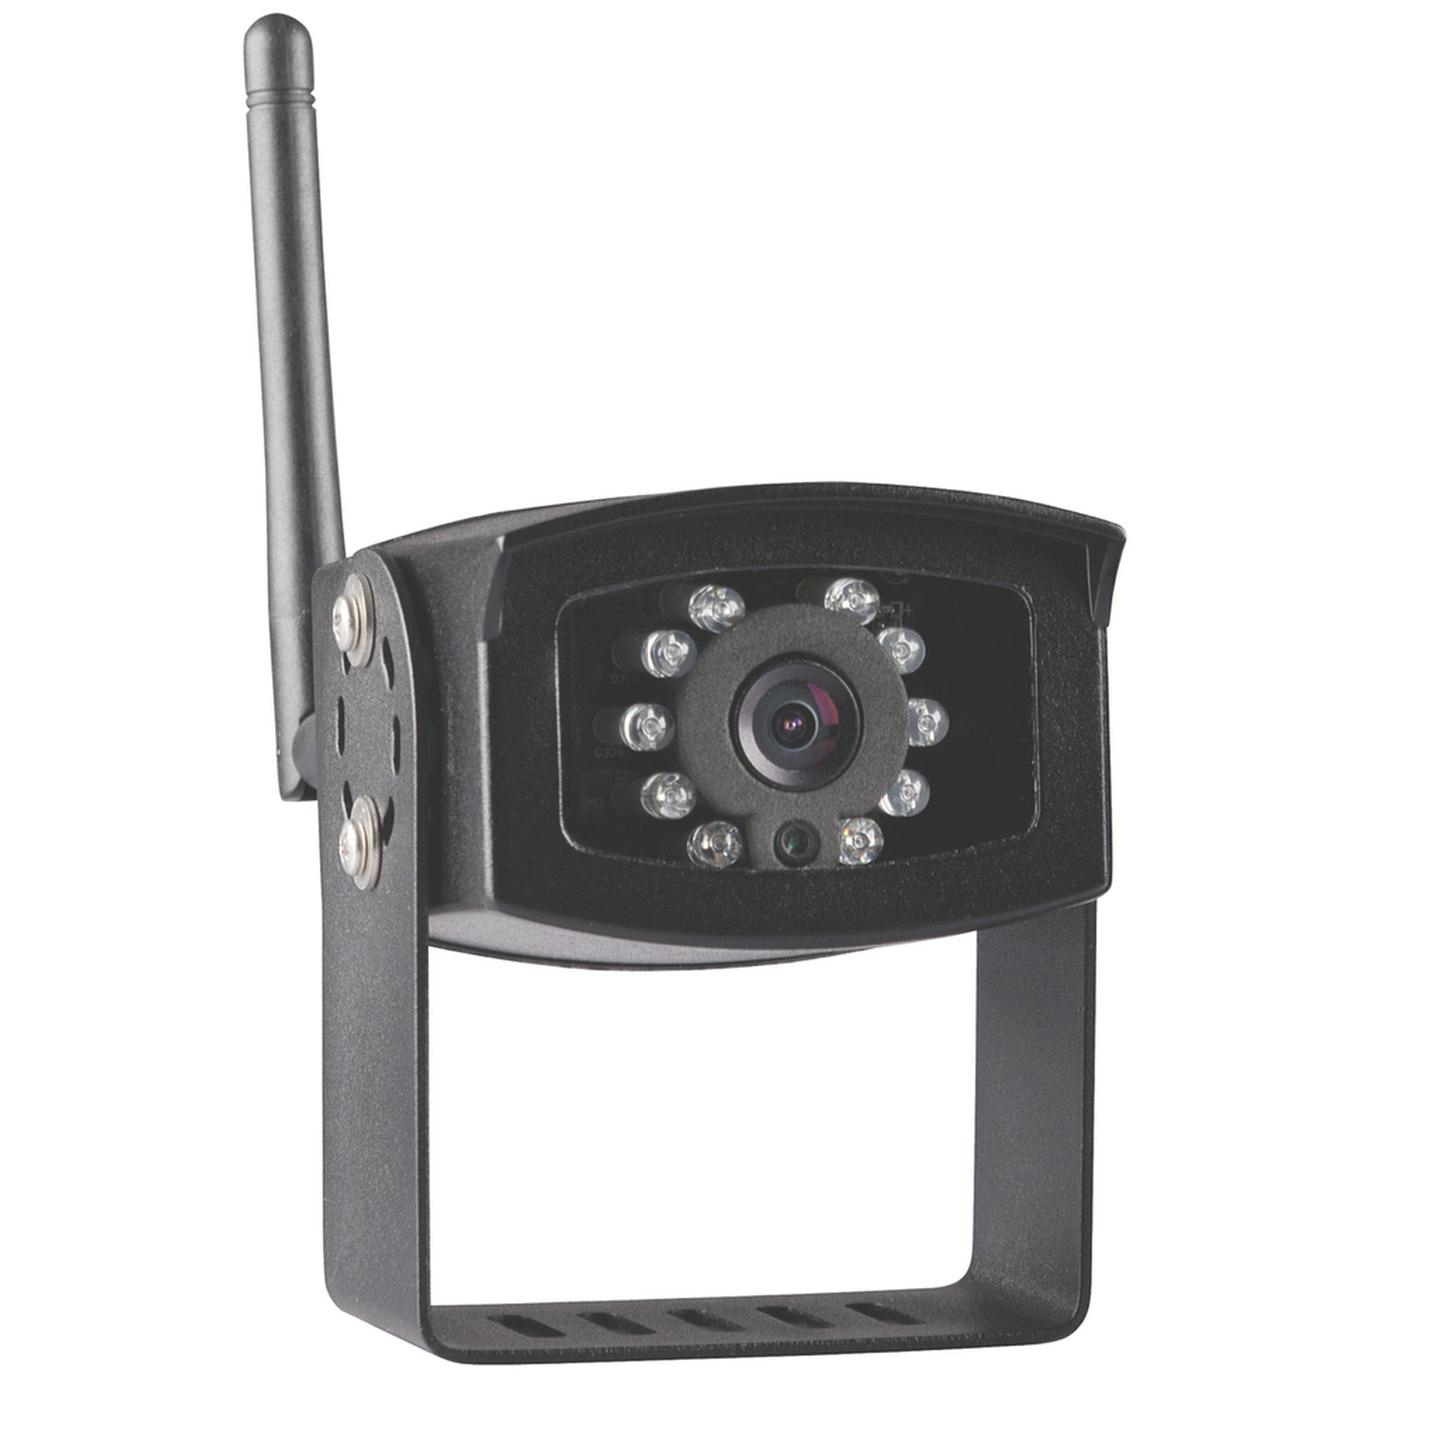 Spare IR Wireless camera to suit QM-3806